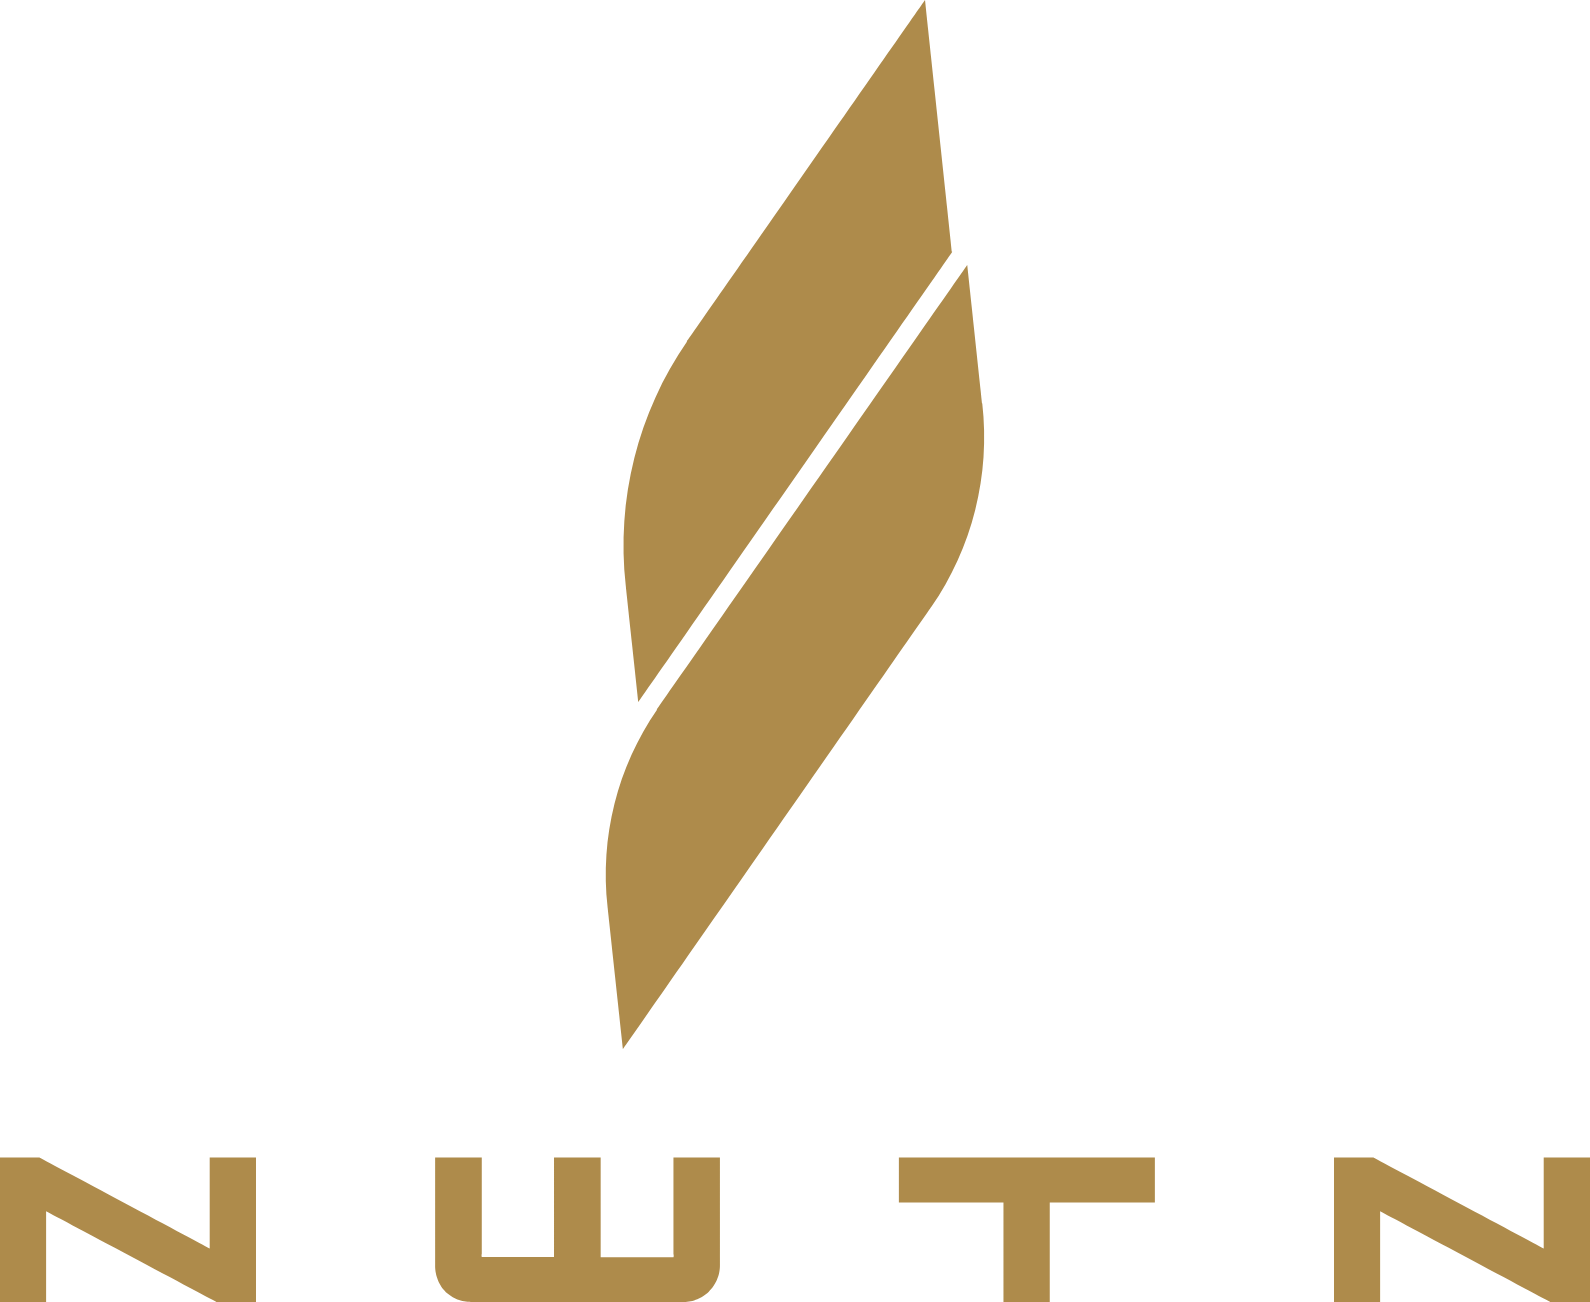 NWTN Inc. logo large (transparent PNG)